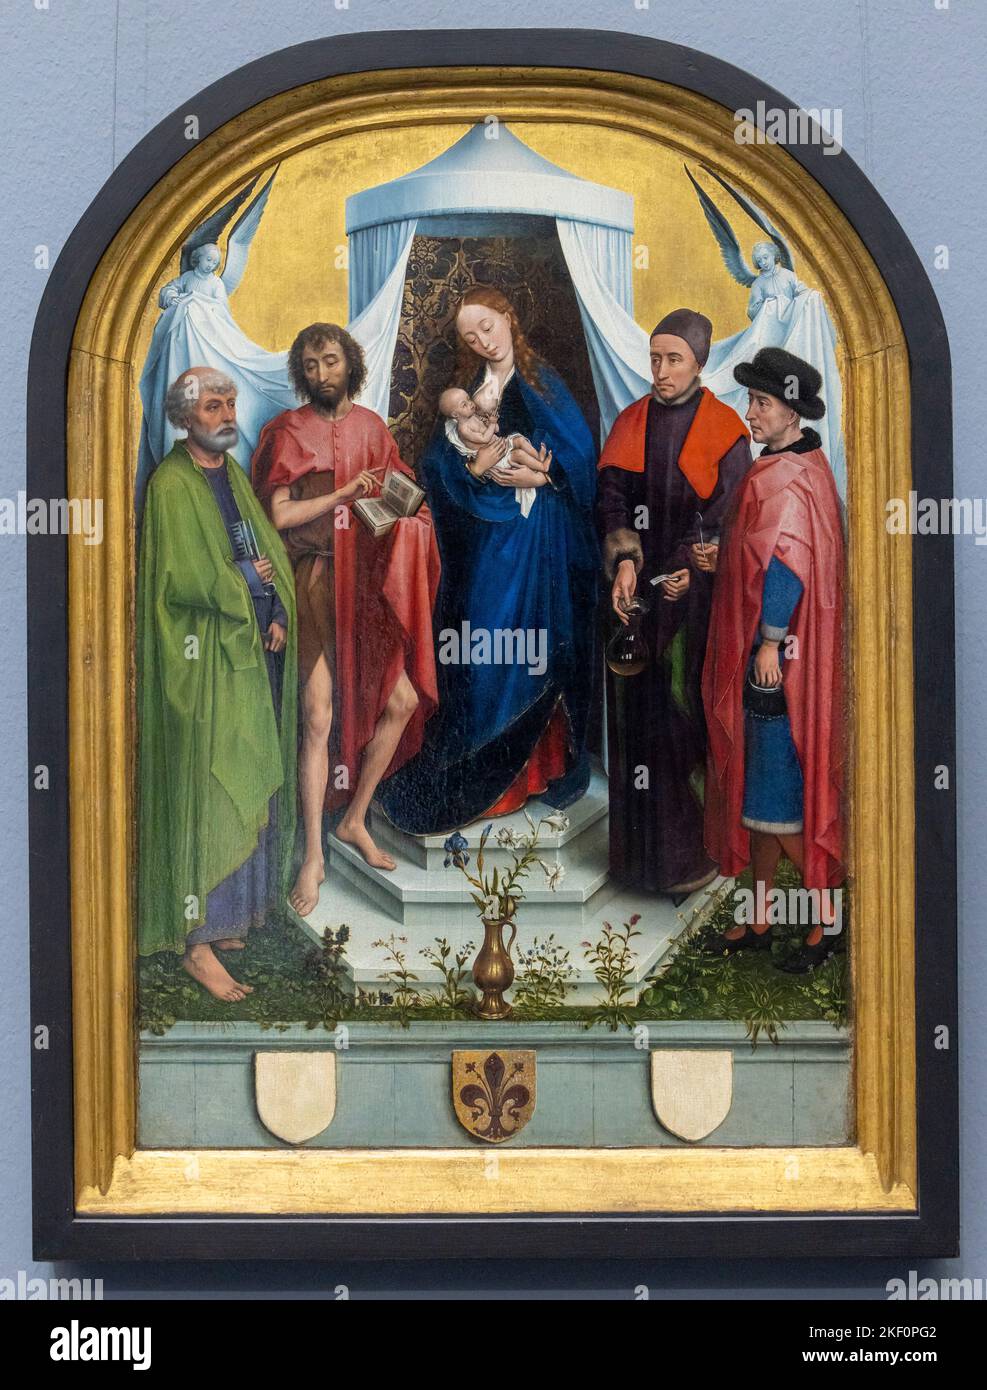 L'alterpiece medicea, Rogier van der Weyden, oleoconaggio, 1453-1460, Museo Städel, Francoforte Foto Stock